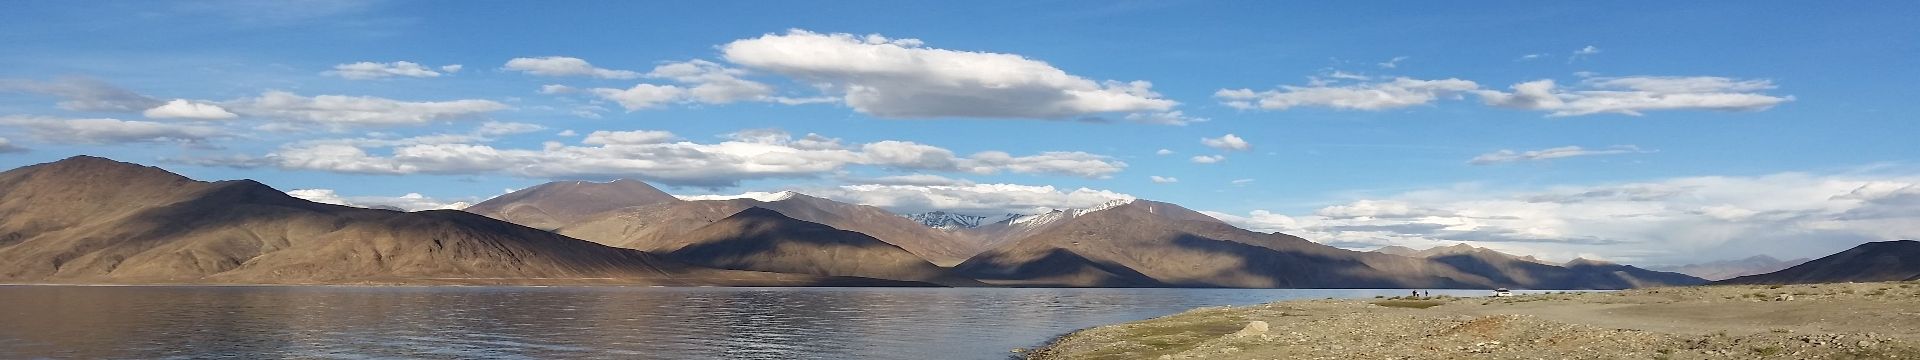 Ladakh inde 1